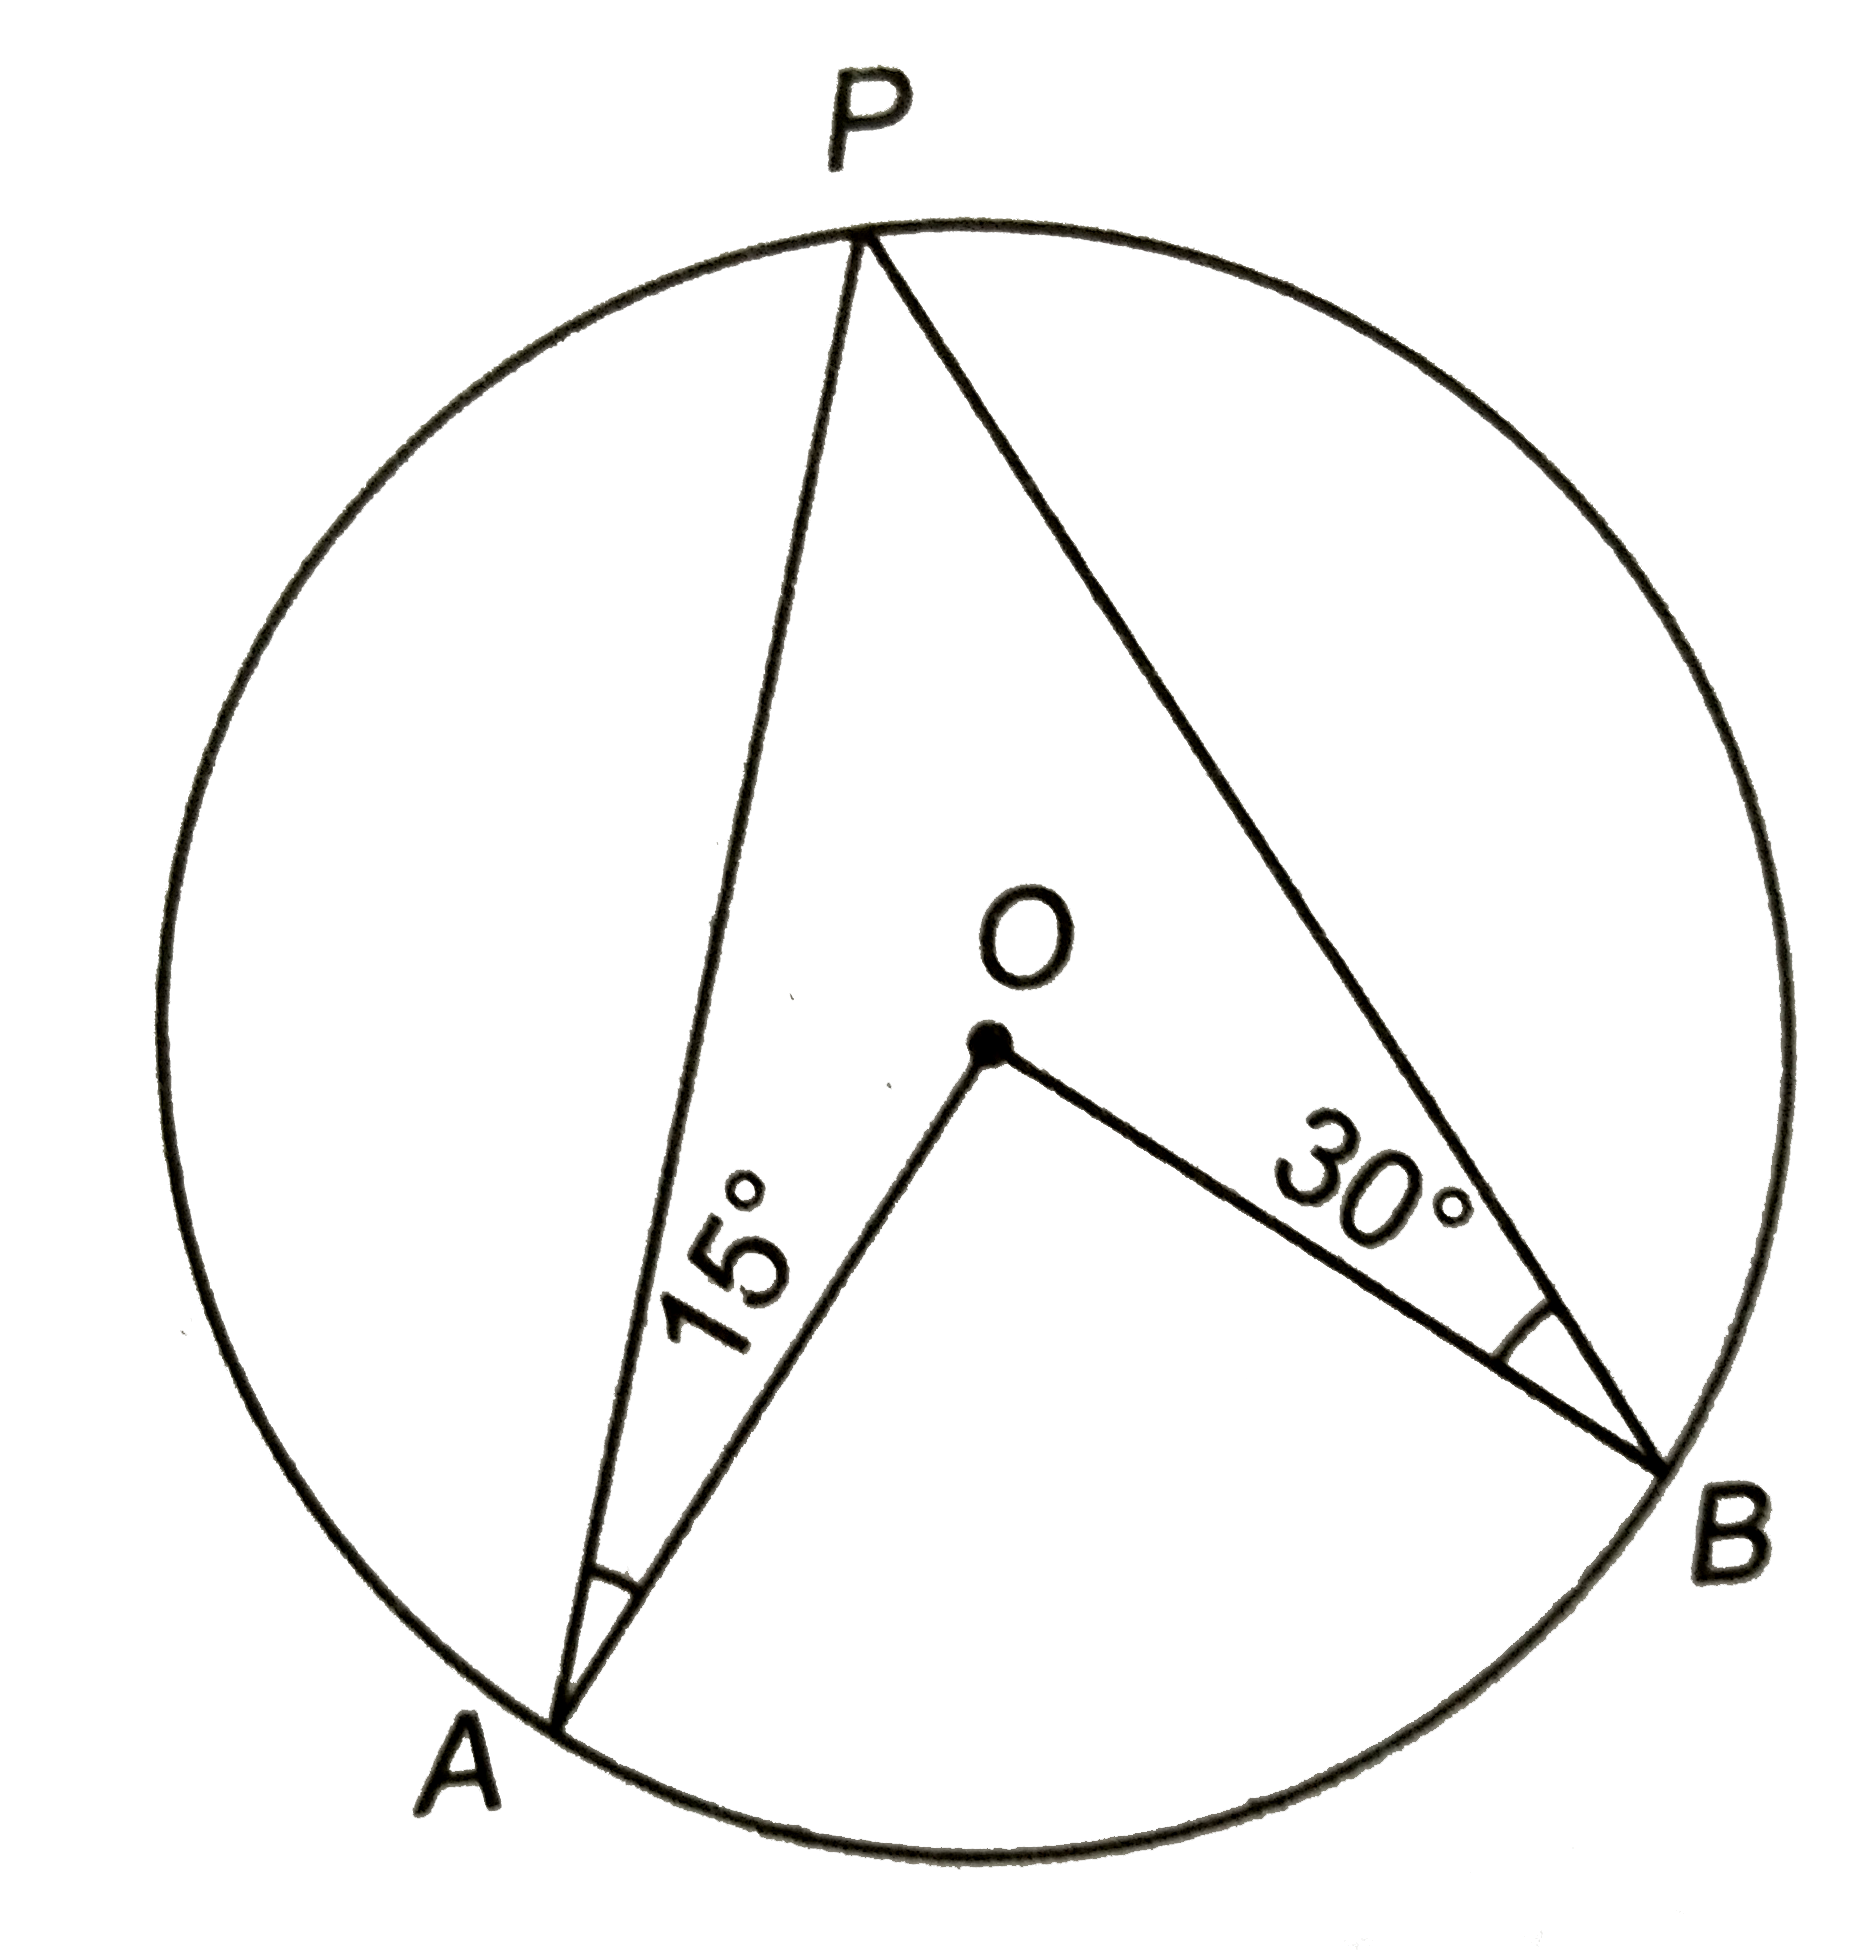 संलग्न चित्र में, 'O' वृत्त का केन्द्र है | यदि anglePAO=15^(@) और anglePBO=30^(@), तो angleAOB का मान ज्ञात कीजिए |